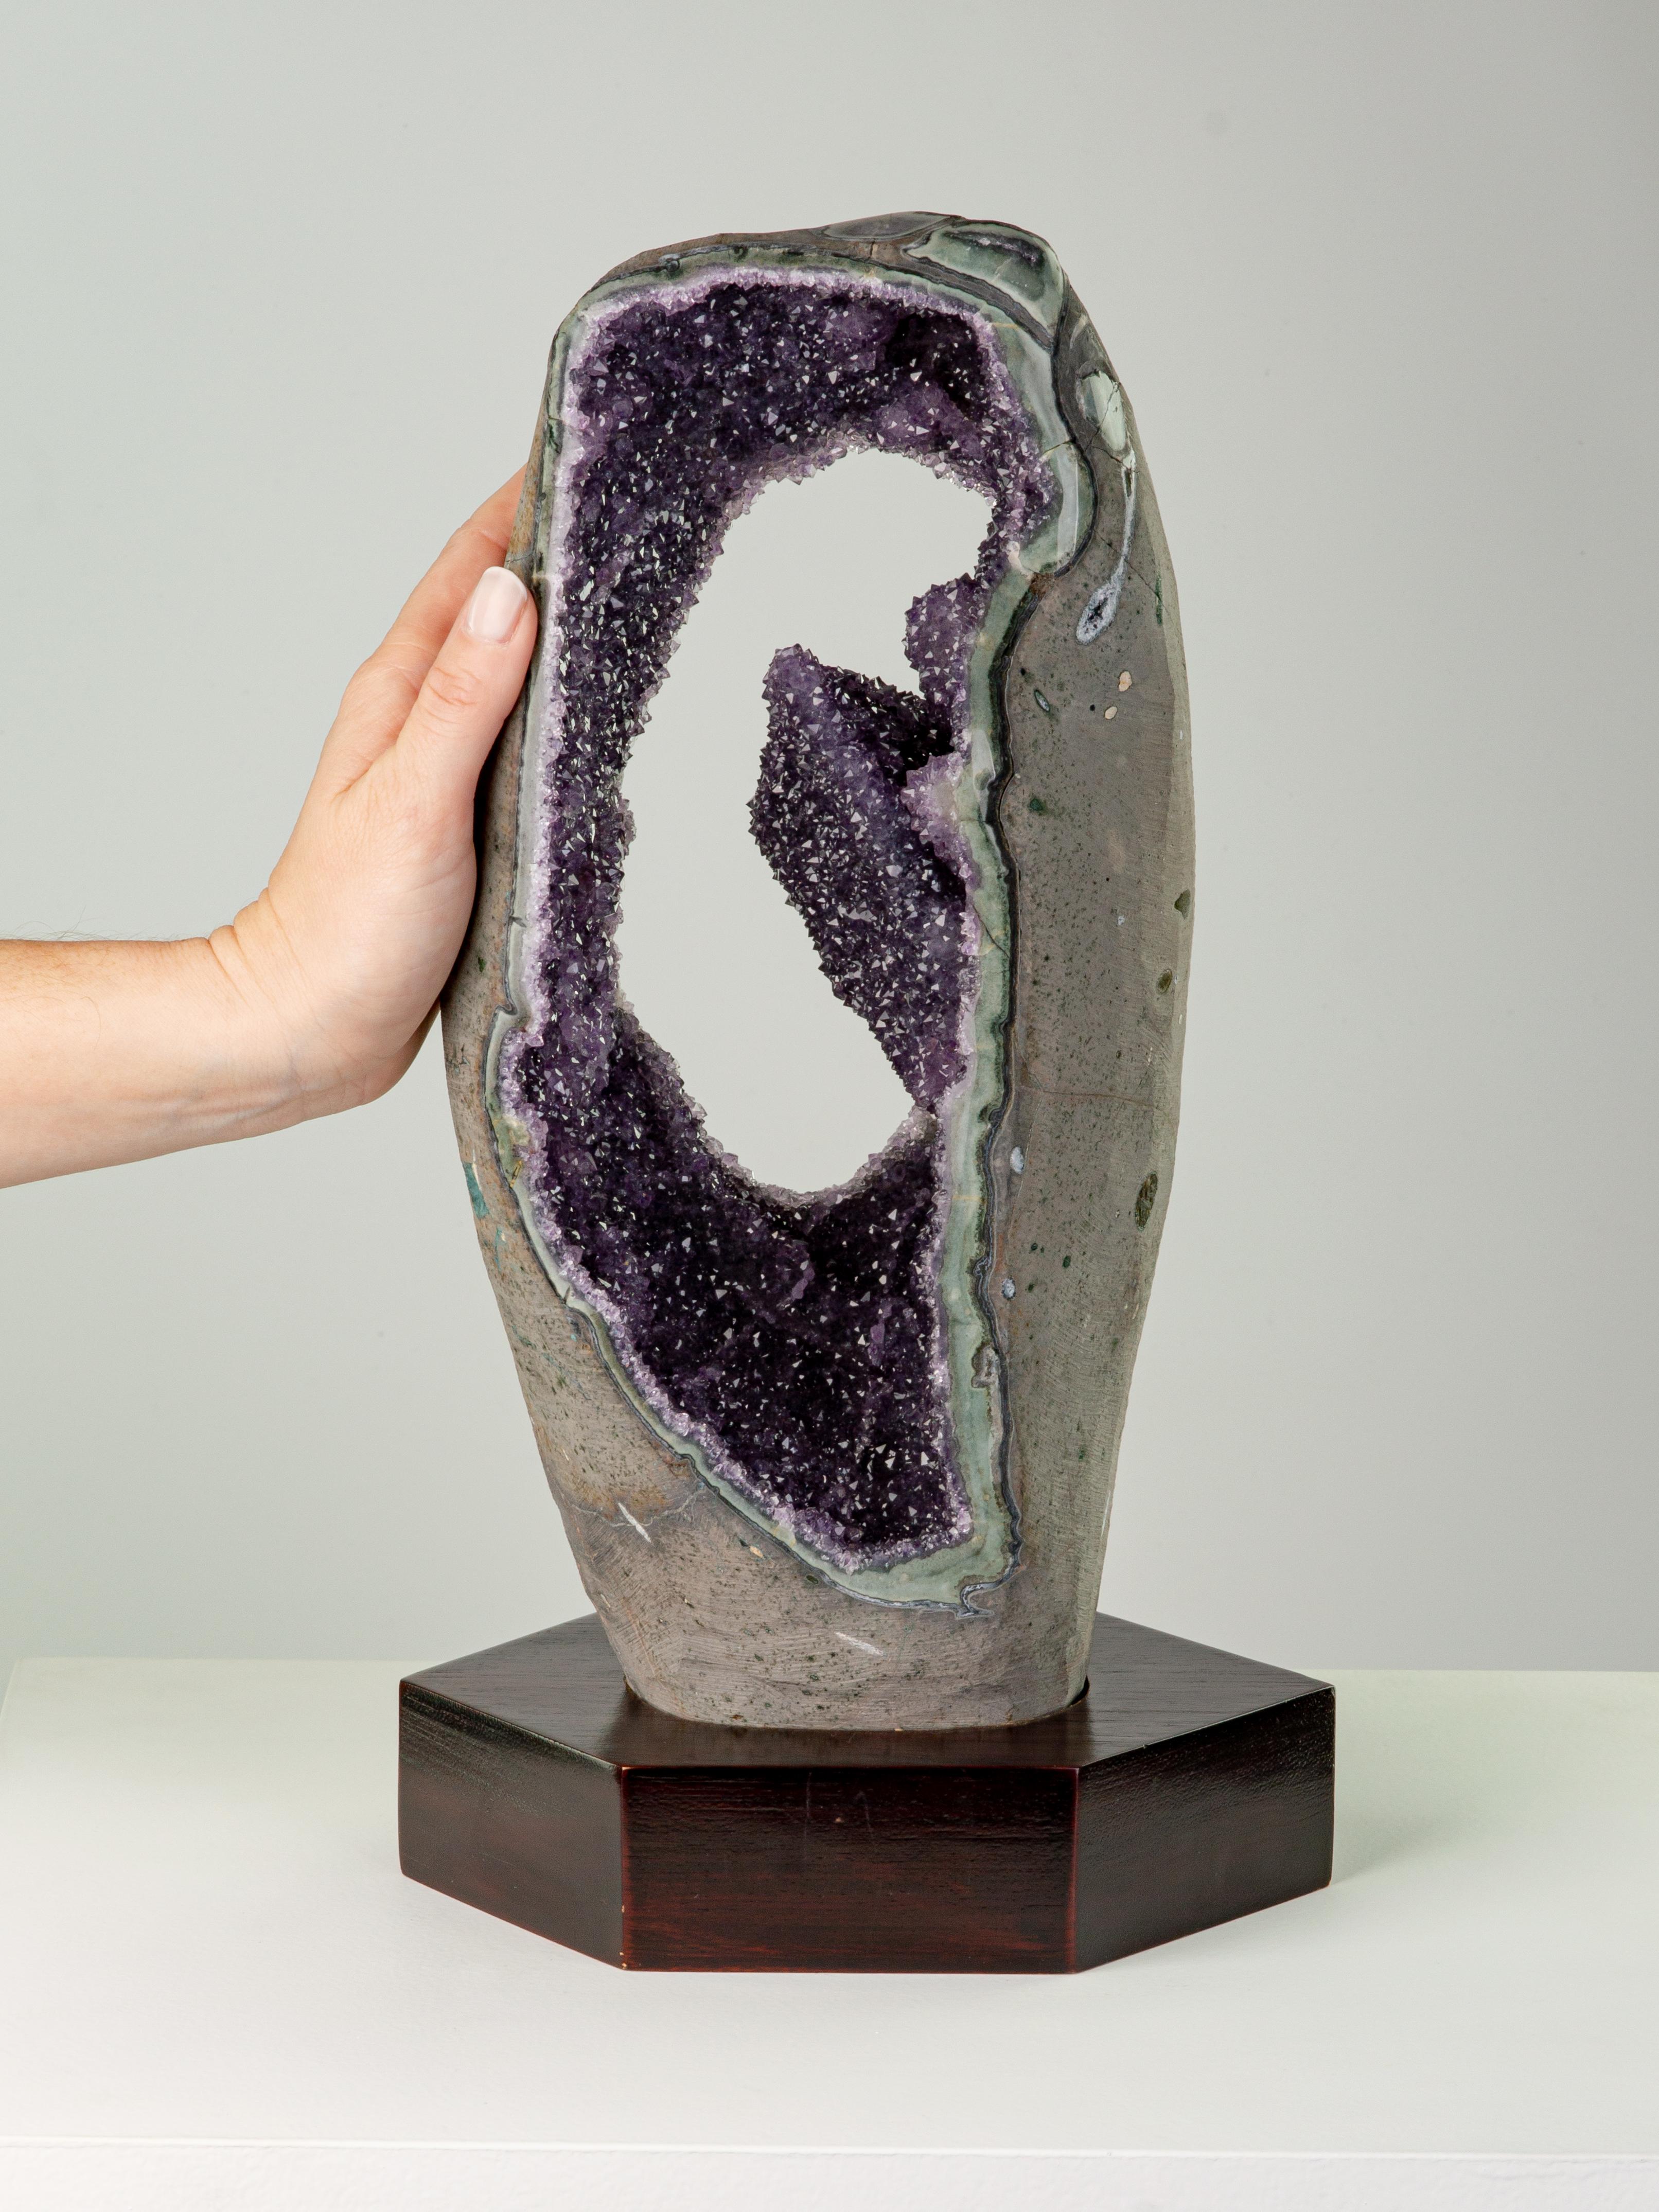 Dieser markante Ausschnitt aus der Mitte einer Geode enthält eine ungewöhnliche Kalzitformation mit einer Decke aus Amethystkristallen. Die Ränder sind poliert, so dass die schöne Celadonit-Muschel zum Vorschein kommt.

Dieses Stück wurde legal